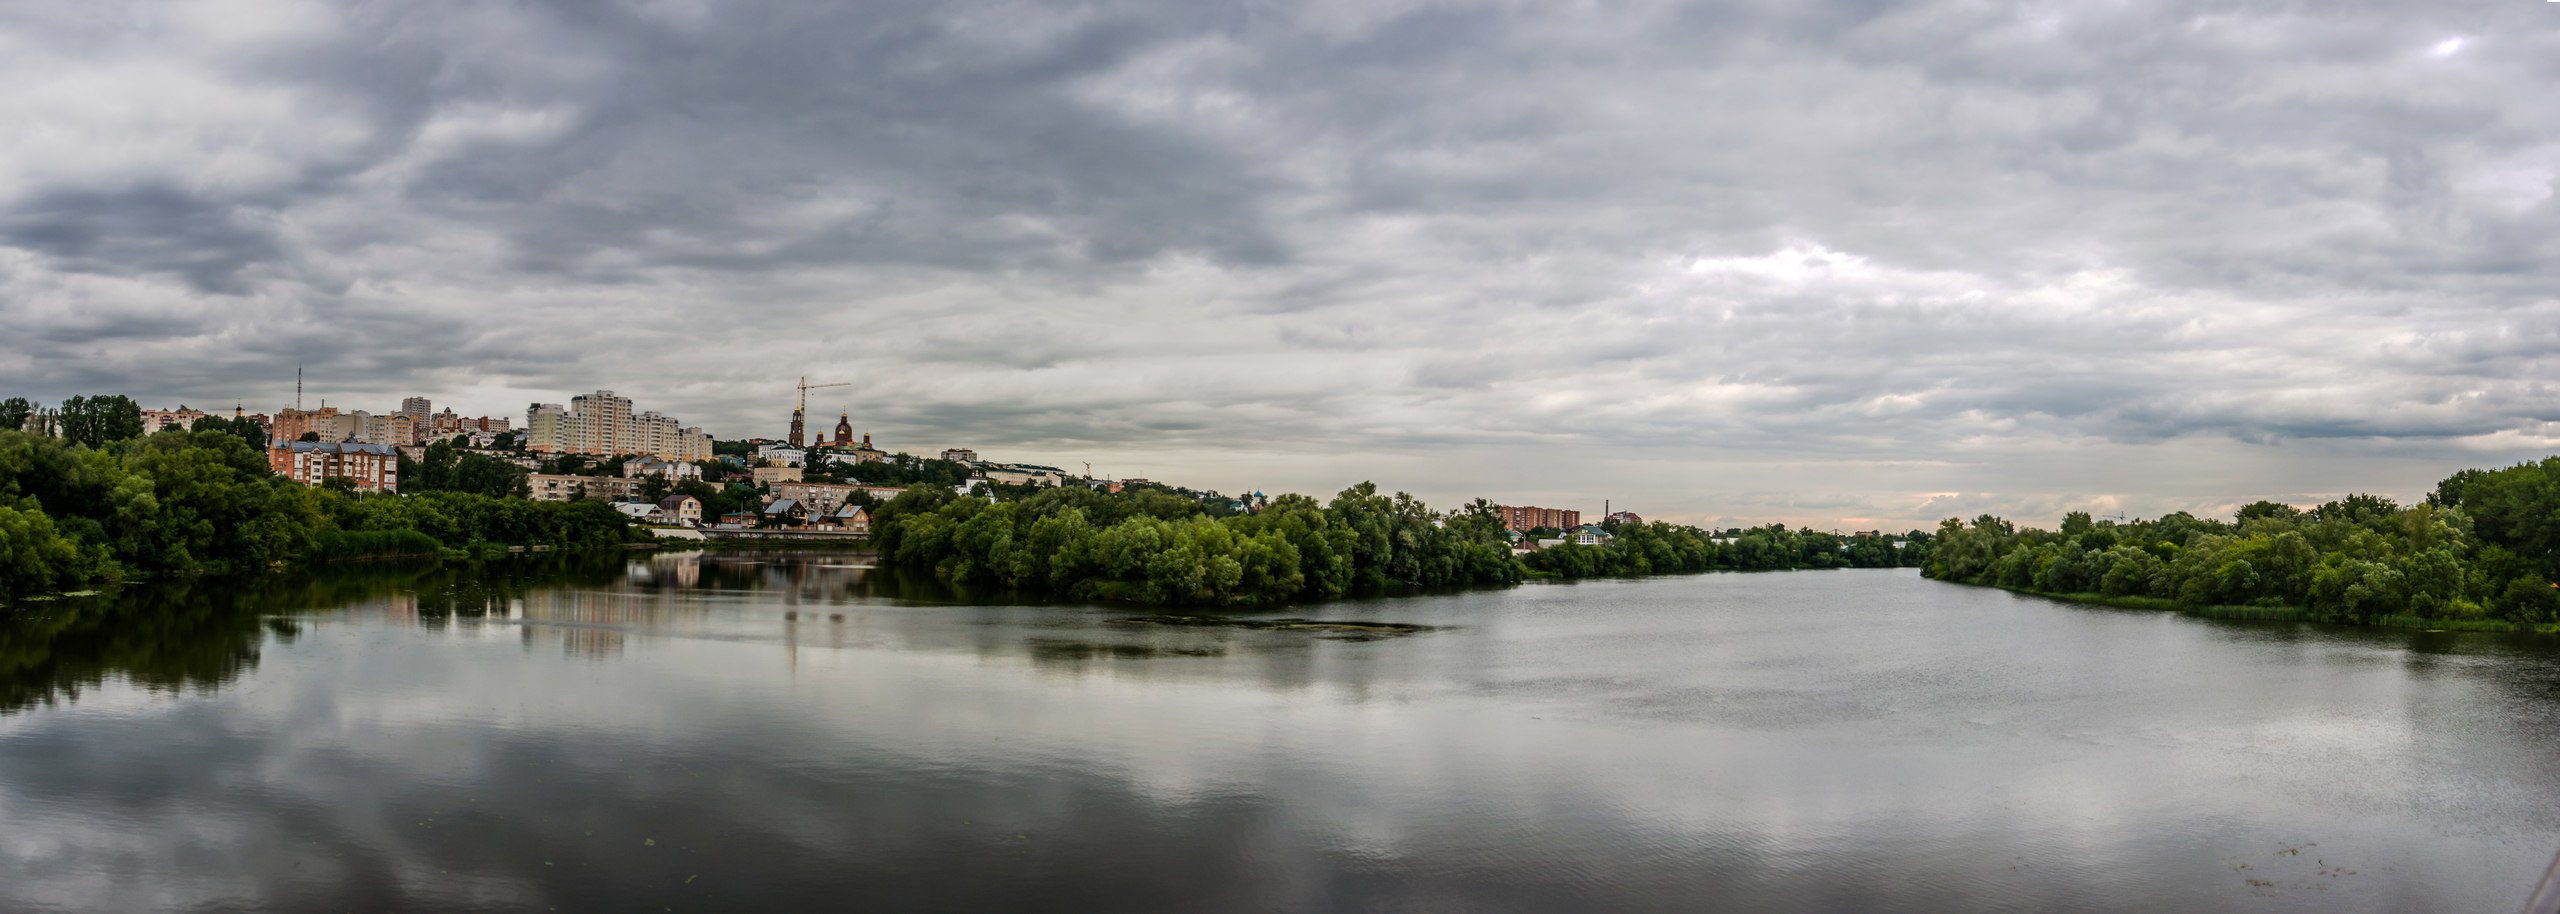 Город на реке сура. Река Сура Пенза. Река Сура в Пензенской области. Панорама река Сура Пенза. Сура Пензенская область микрорайон.